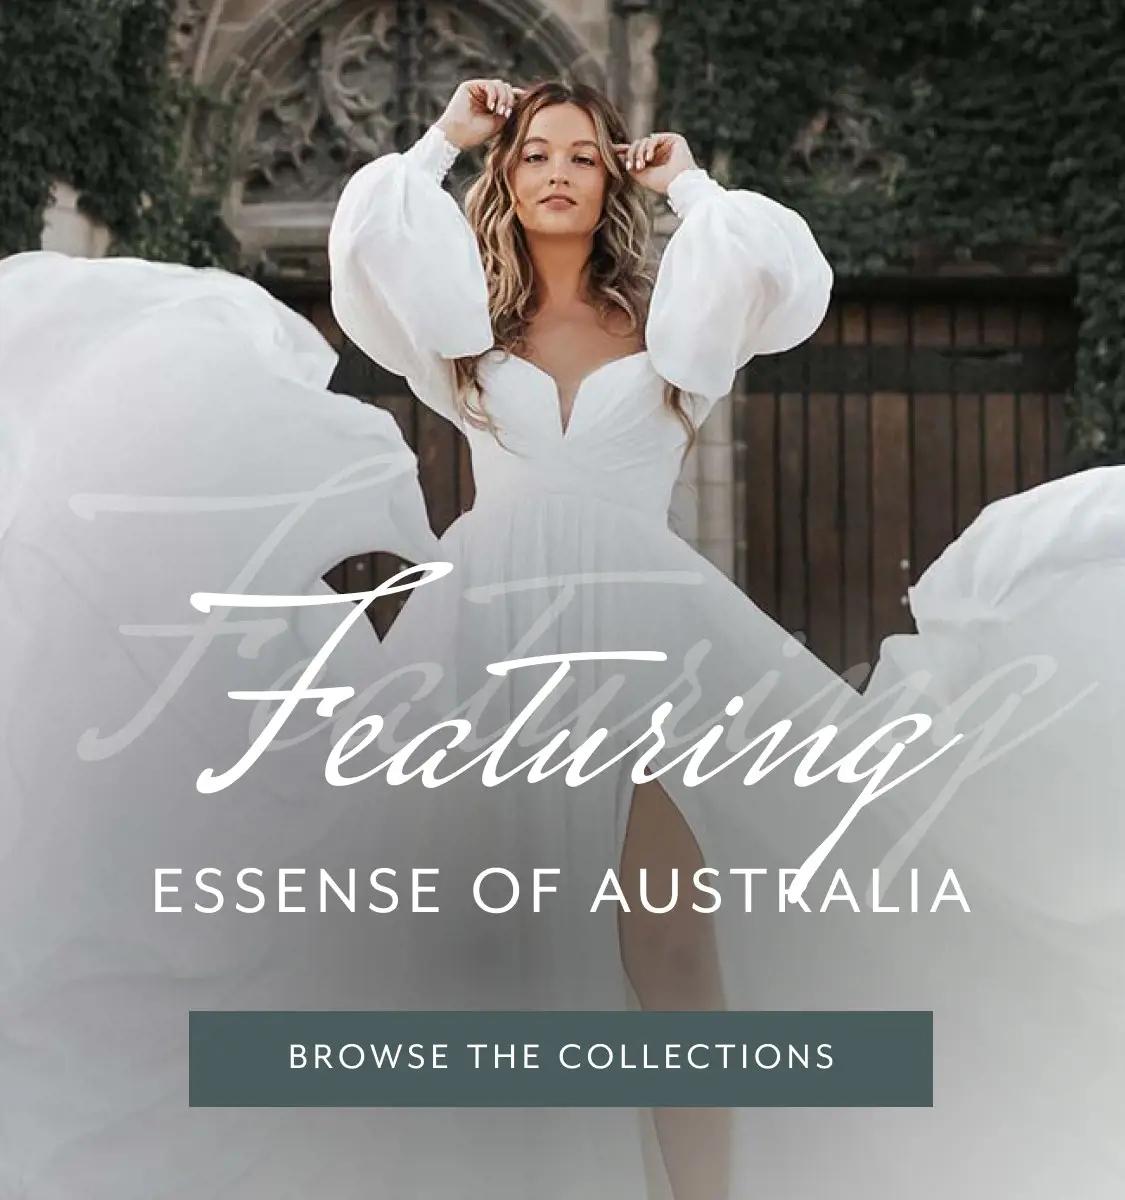 "Essense of Australia" banner for mobile